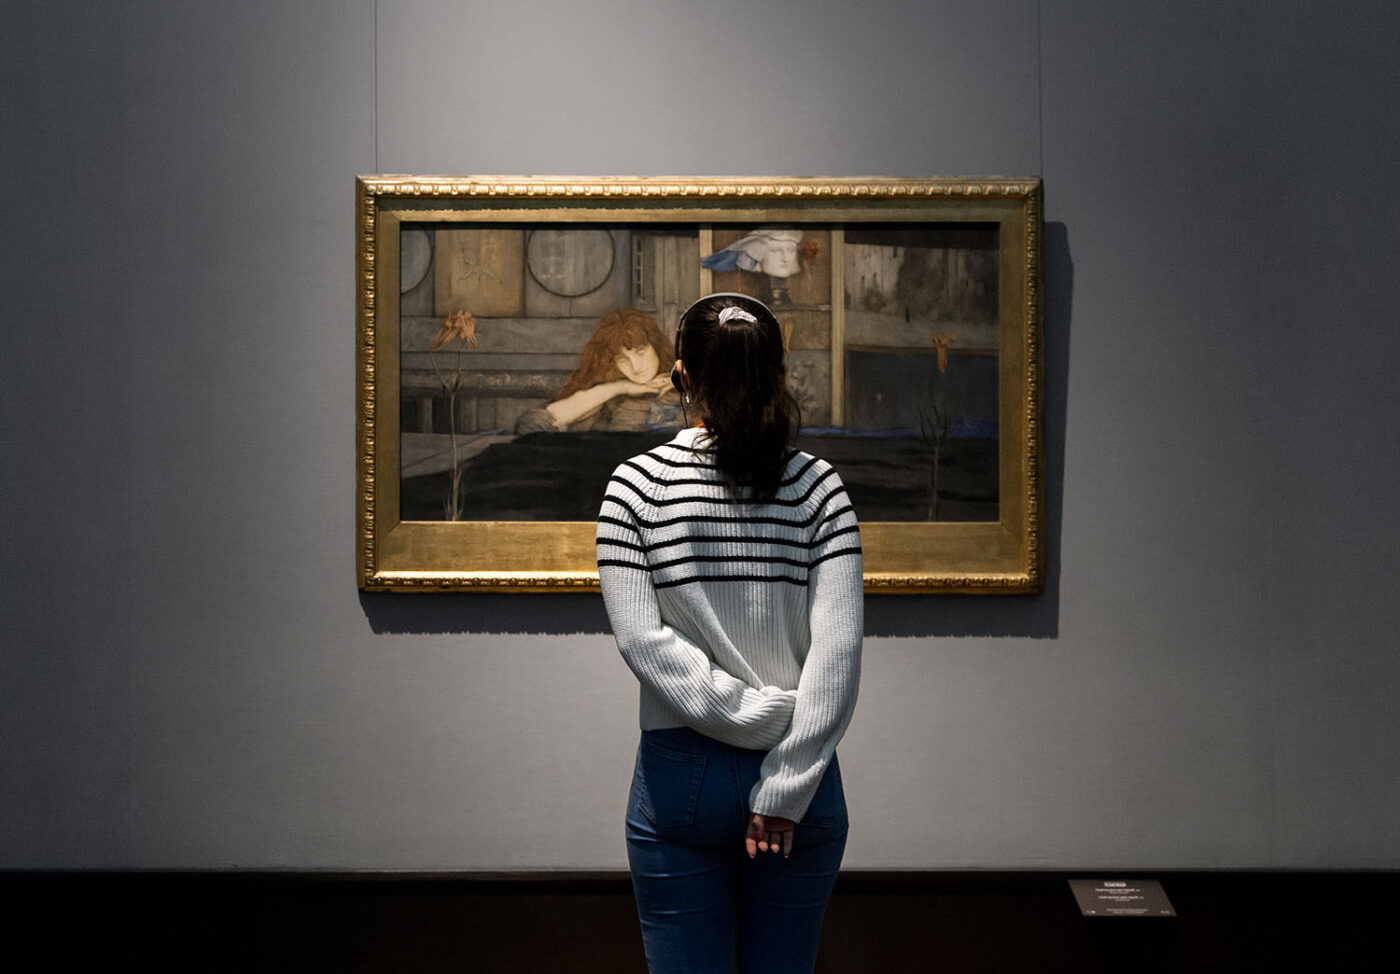 Ein zentraler Protagonist der Symbolismus-Ausstellung war der Künstler Fernand Khnopff. Neben Schlüsselwerken aus belgischen Museen und Privatsammlungen zeigte die Ausstellung auch diese Leihgabe der Bayerischen Staatsgemäldesammlungen, das Gemälde I lock my door upon myself. 